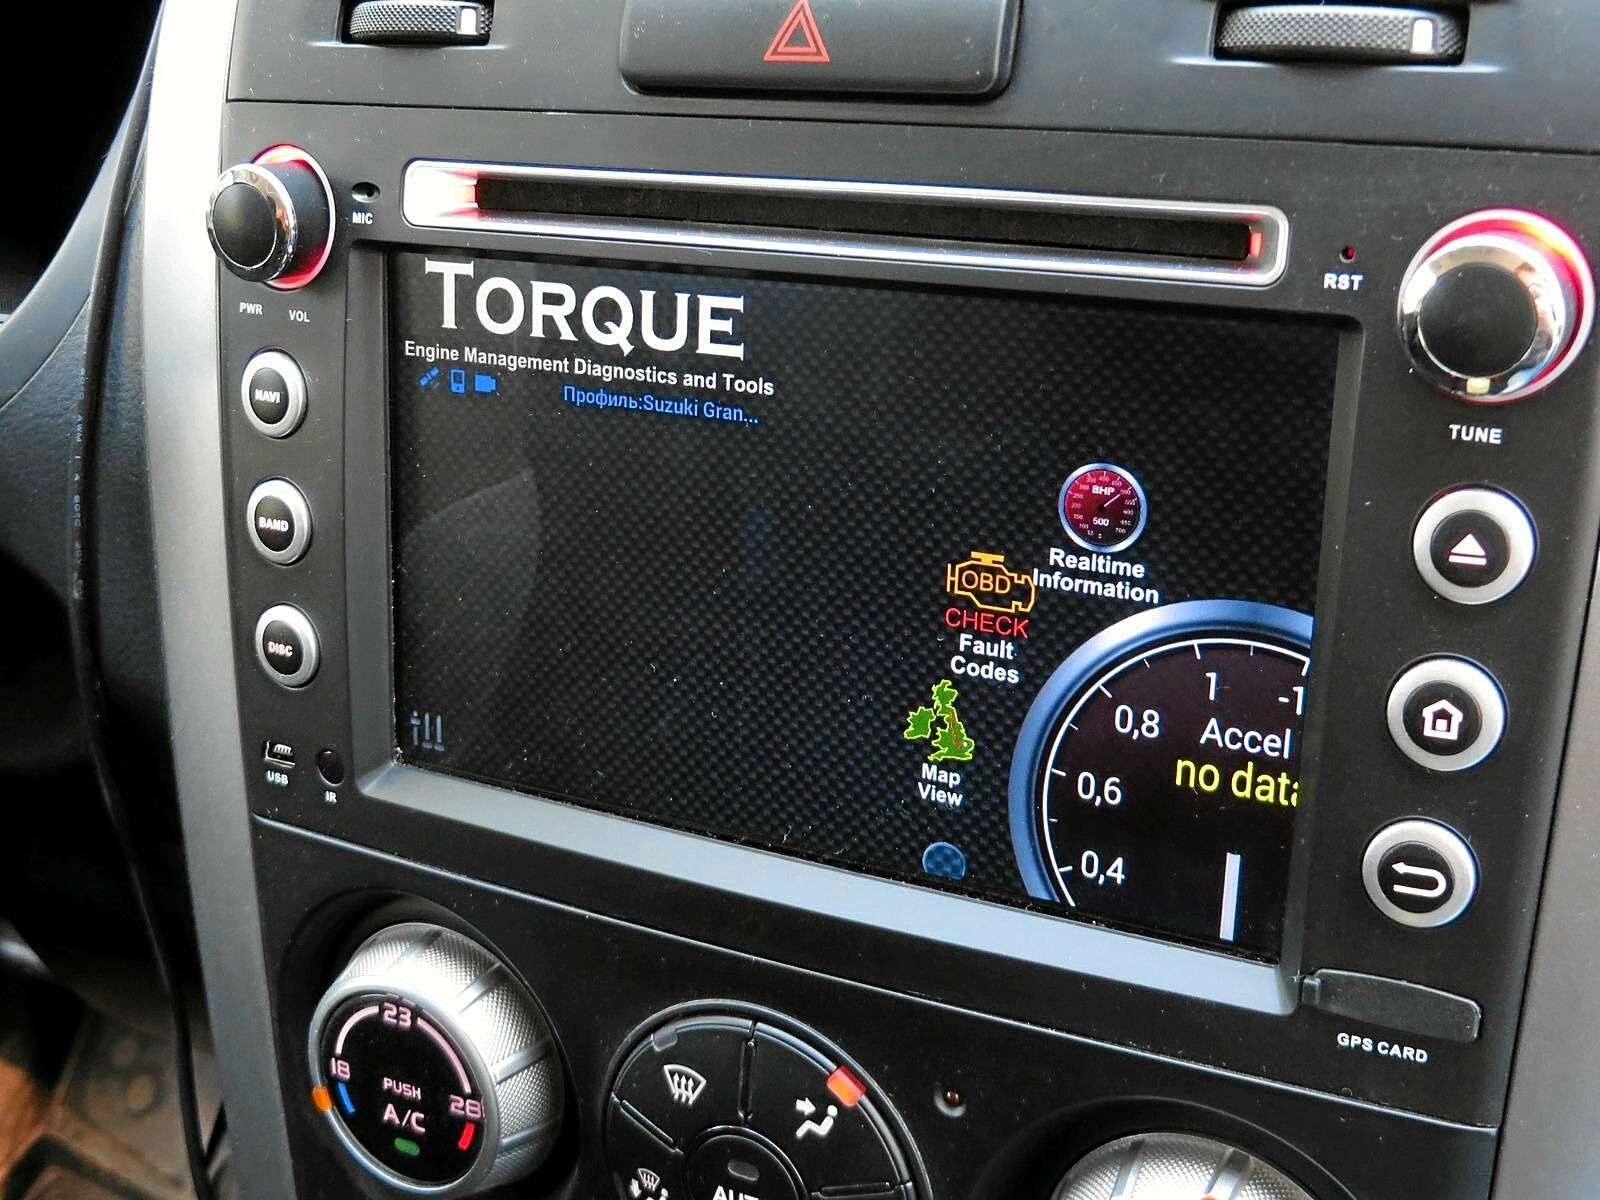 Приложение Torque для диагностики автомобиля уже было установлено в головном устройстве.